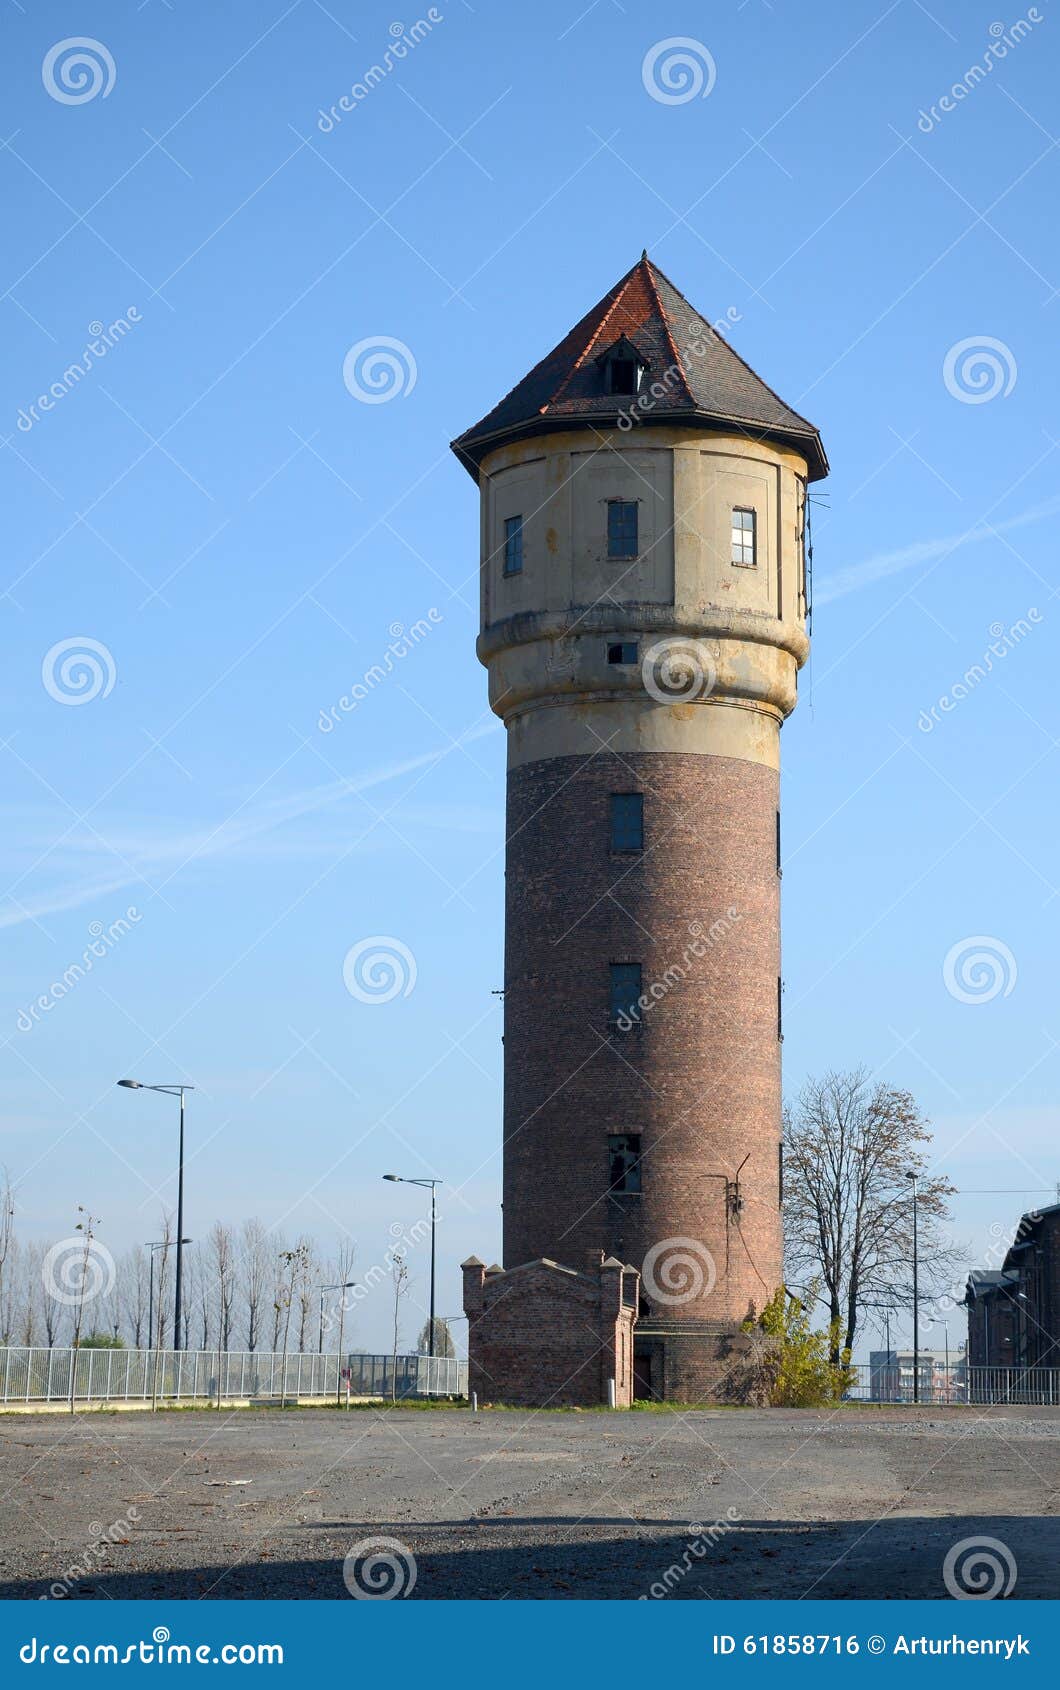 Vecchia torre di acqua in Katowice, Polonia (vecchia miniera)